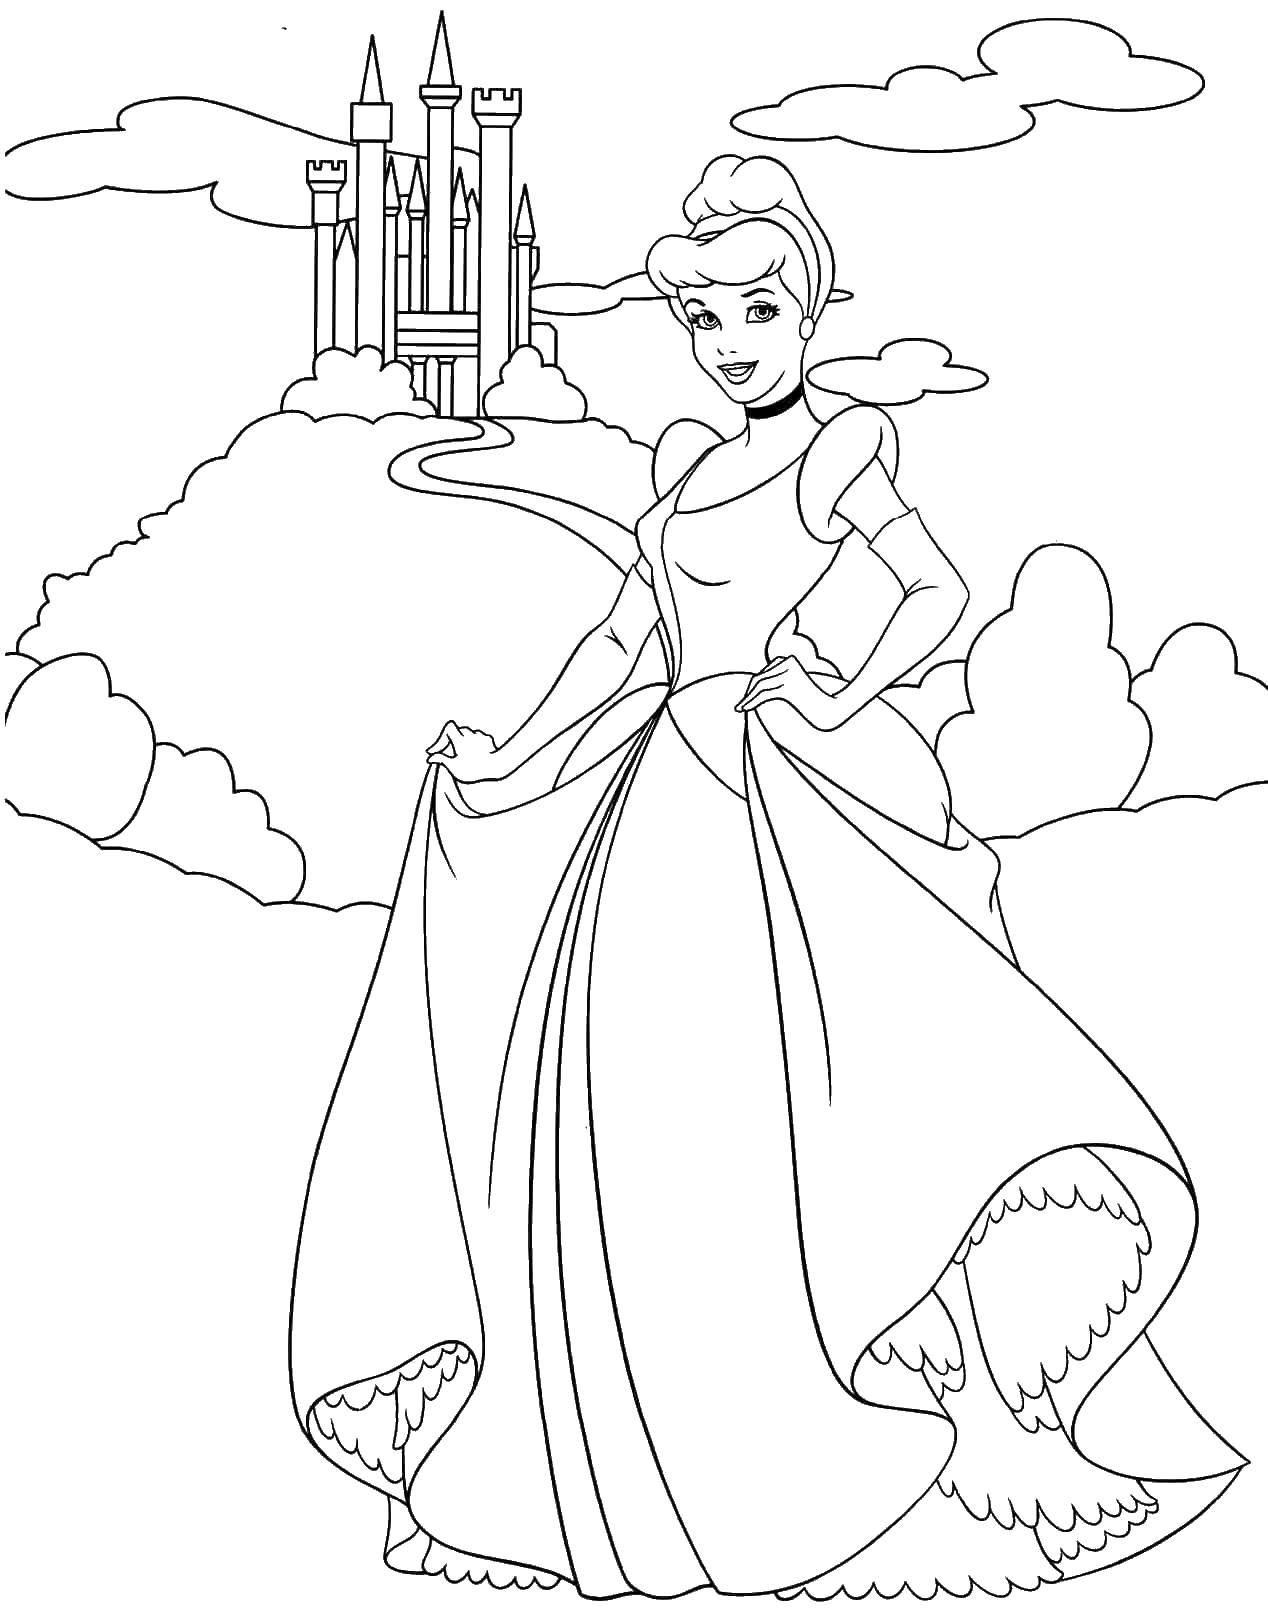 Coloring Cinderella castle. Category Princess. Tags:  princesses, cartoons, fairy tales, Cinderella.